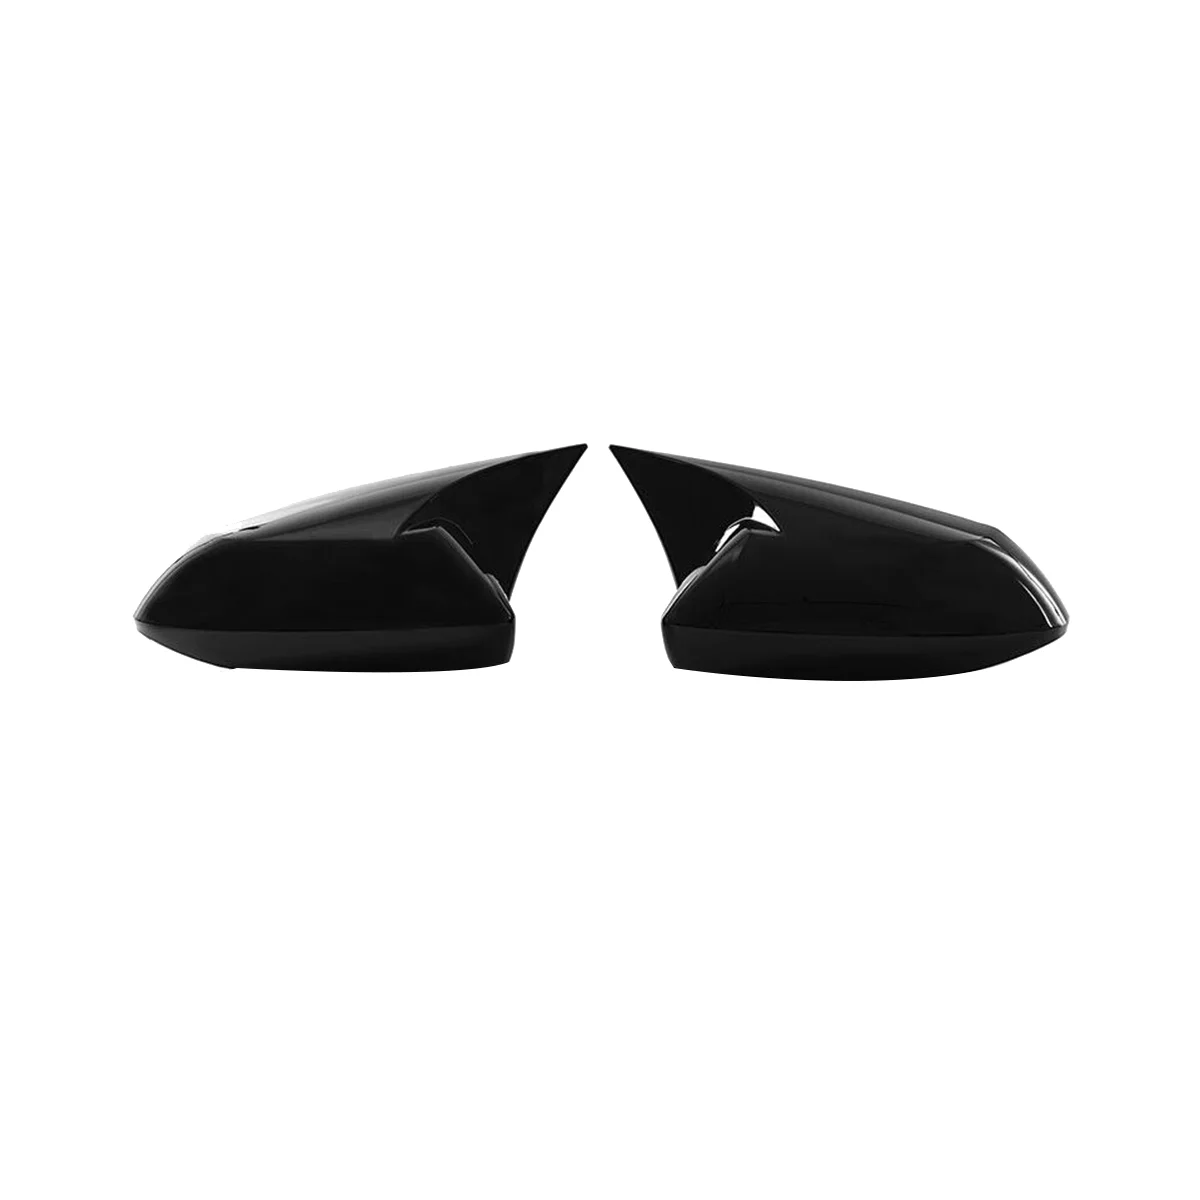 Parlak Siyah ÖKÜZ Boynuz Dikiz Aynası Kapağı Cap Trim Toyota Corolla için